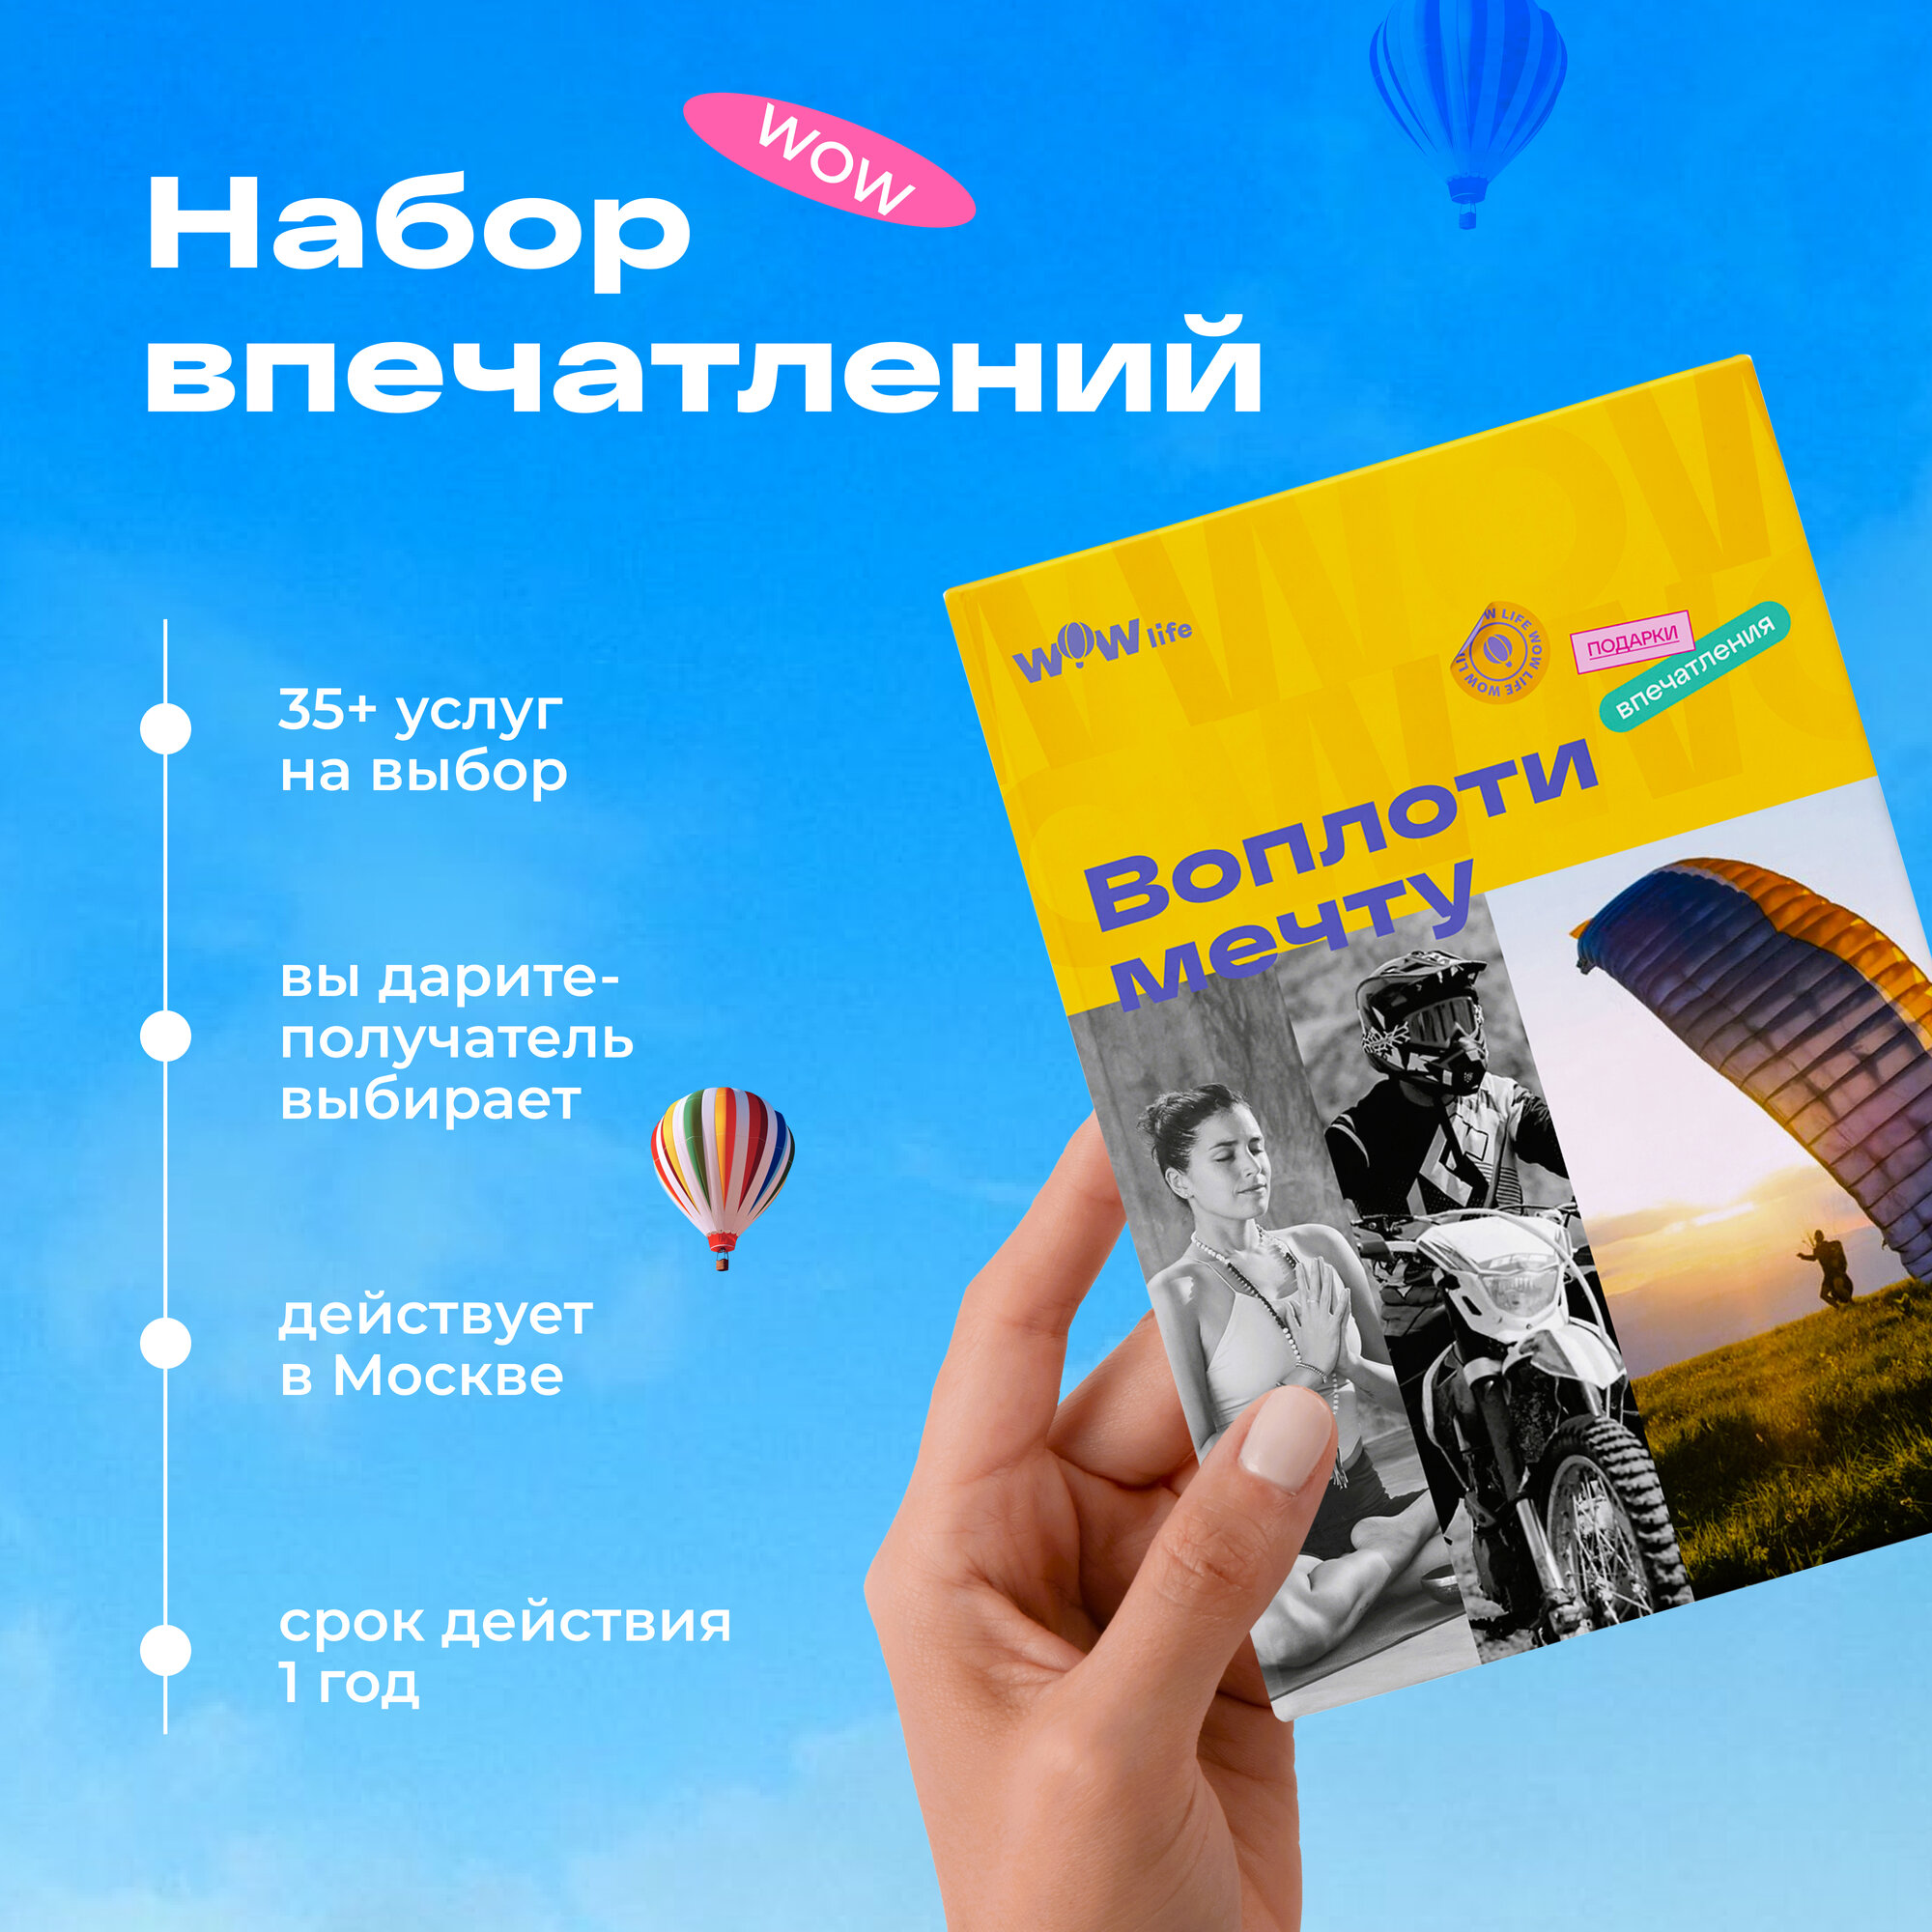 Подарочный сертификат WOWlife "Воплоти мечту" - набор из впечатлений на выбор, Москва